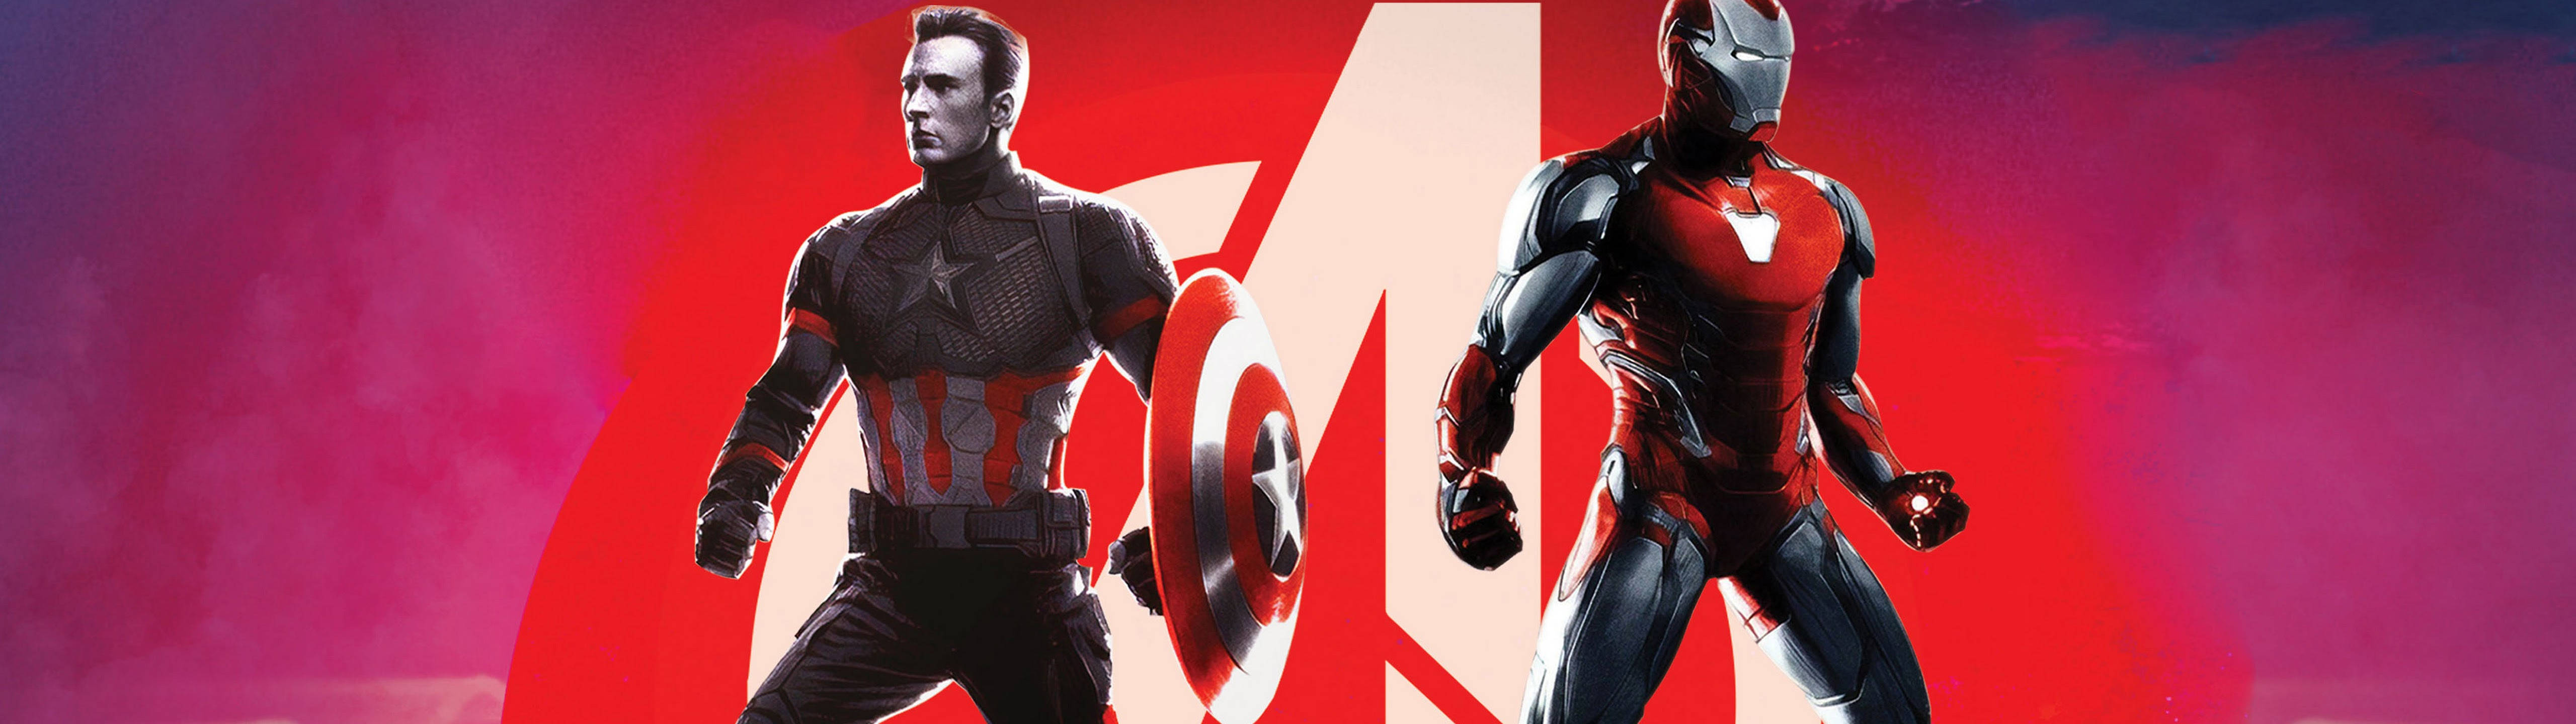 Marvel The Civil War 5120 X 1440